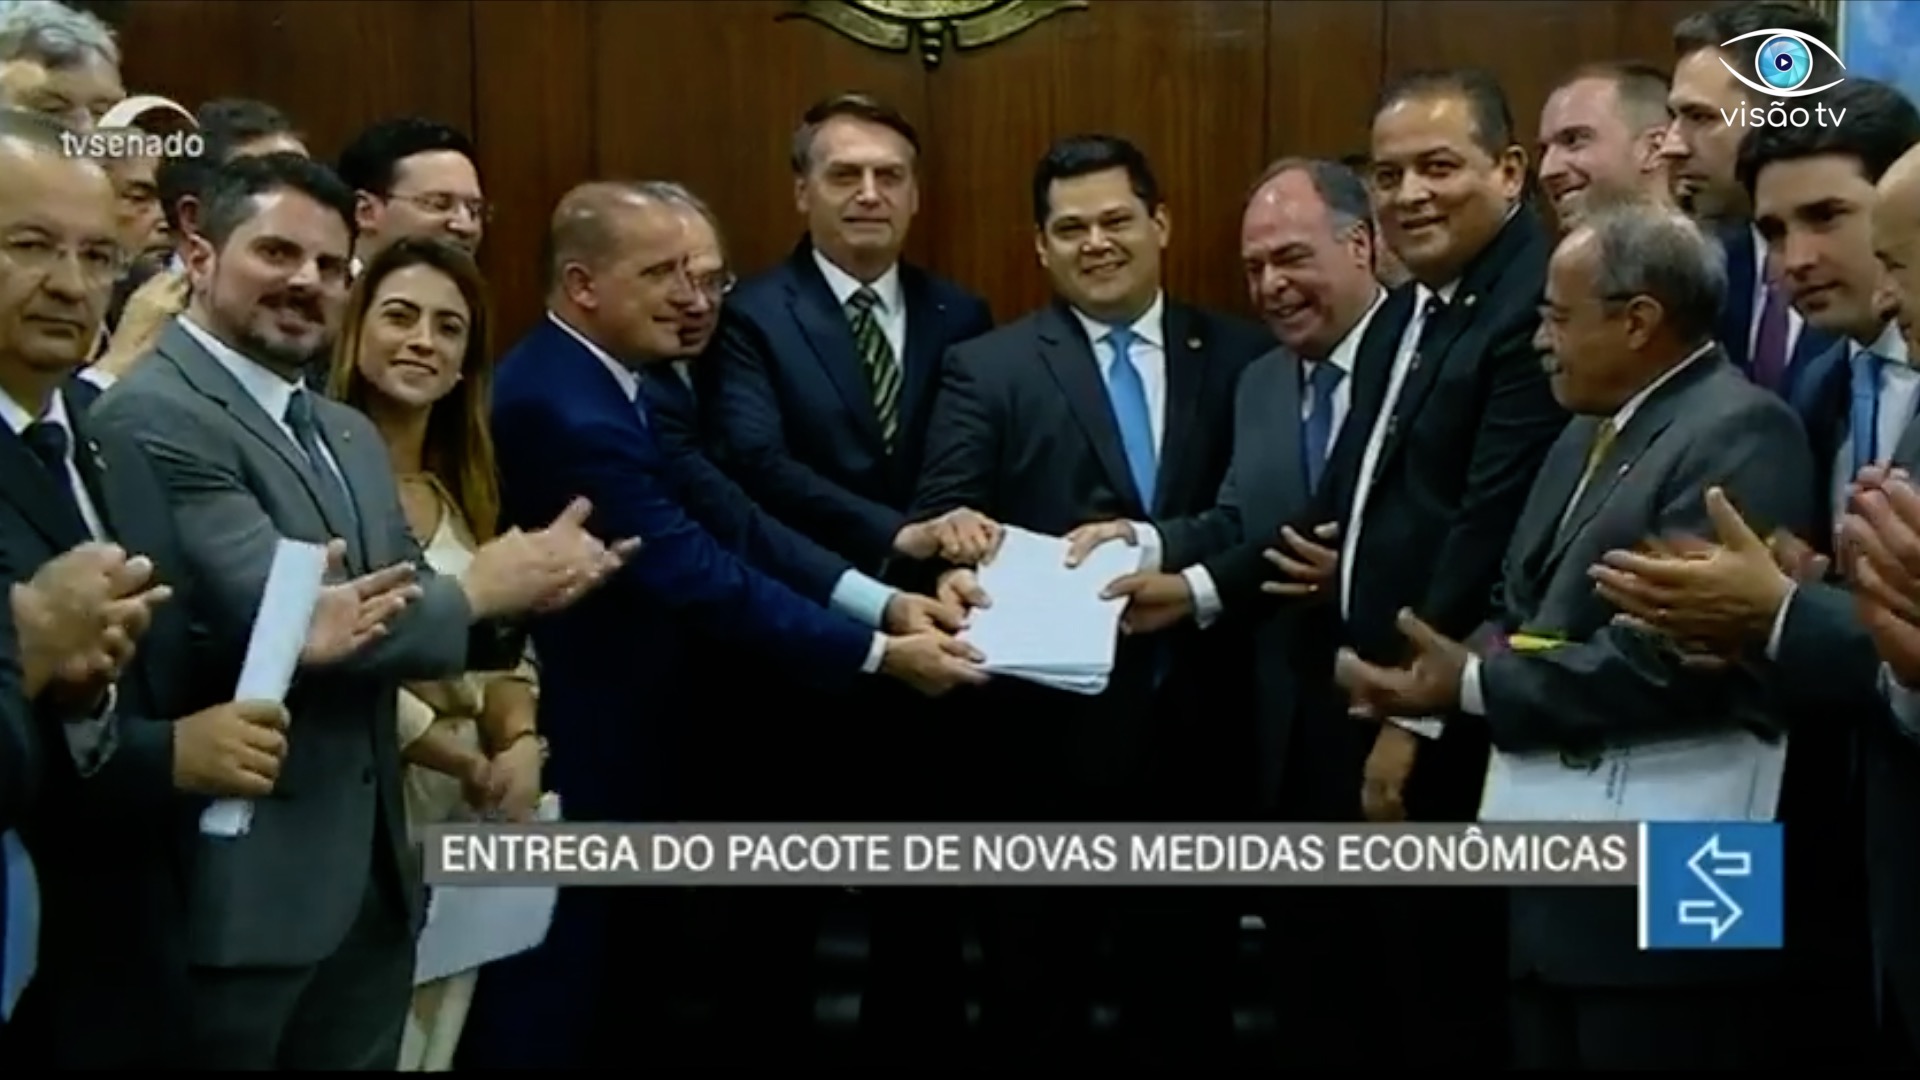 NOVO PACOTE ECONÔMICO DE PAULO GUEDES PROMETE MELHORAR A ECONOMIA DO BRASIL